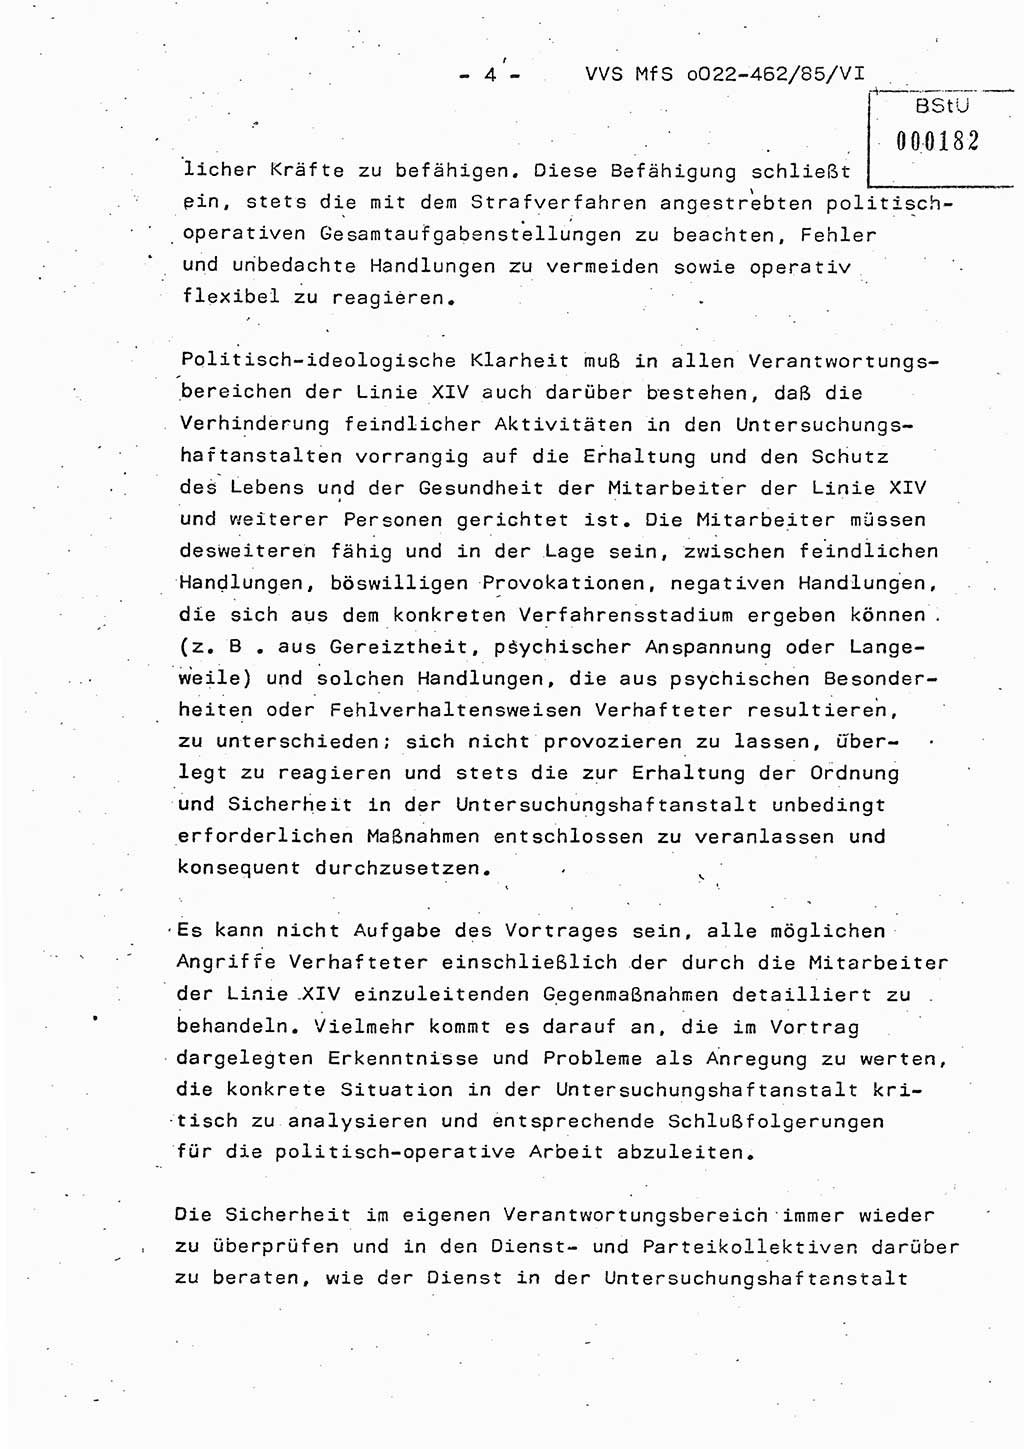 Der Untersuchungshaftvollzug im MfS, Schulungsmaterial Teil Ⅵ, Ministerium für Staatssicherheit [Deutsche Demokratische Republik (DDR)], Abteilung (Abt.) ⅩⅣ, Vertrauliche Verschlußsache (VVS) o022-462/85/Ⅵ, Berlin 1985, Seite 4 (Sch.-Mat. Ⅵ MfS DDR Abt. ⅩⅣ VVS o022-462/85/Ⅵ 1985, S. 4)